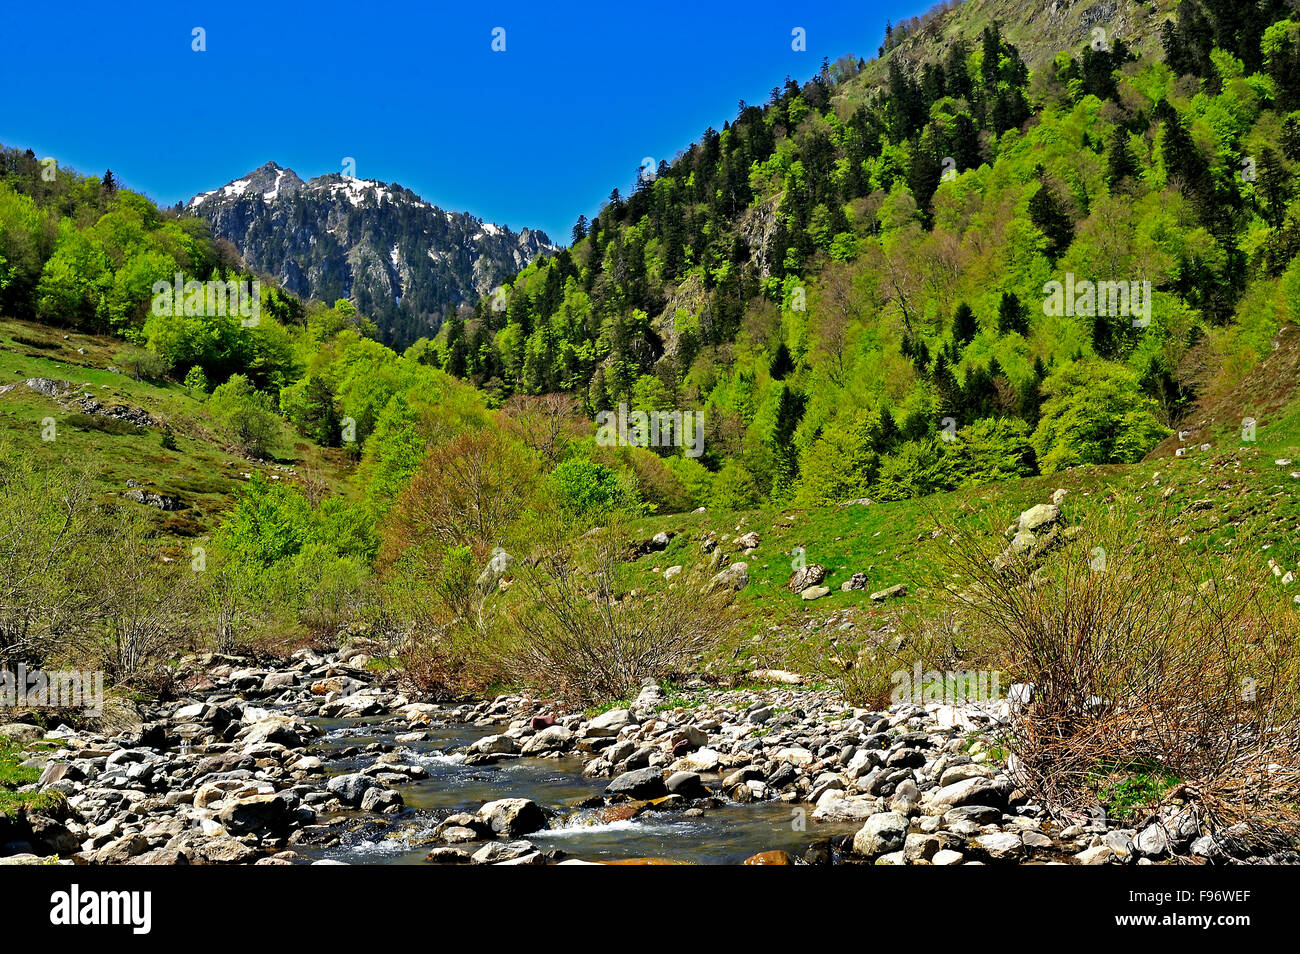 Bious Oumettes area, Pyrenees National Park, PyreneesAtlantique Department, Aquitaine, France Stock Photo